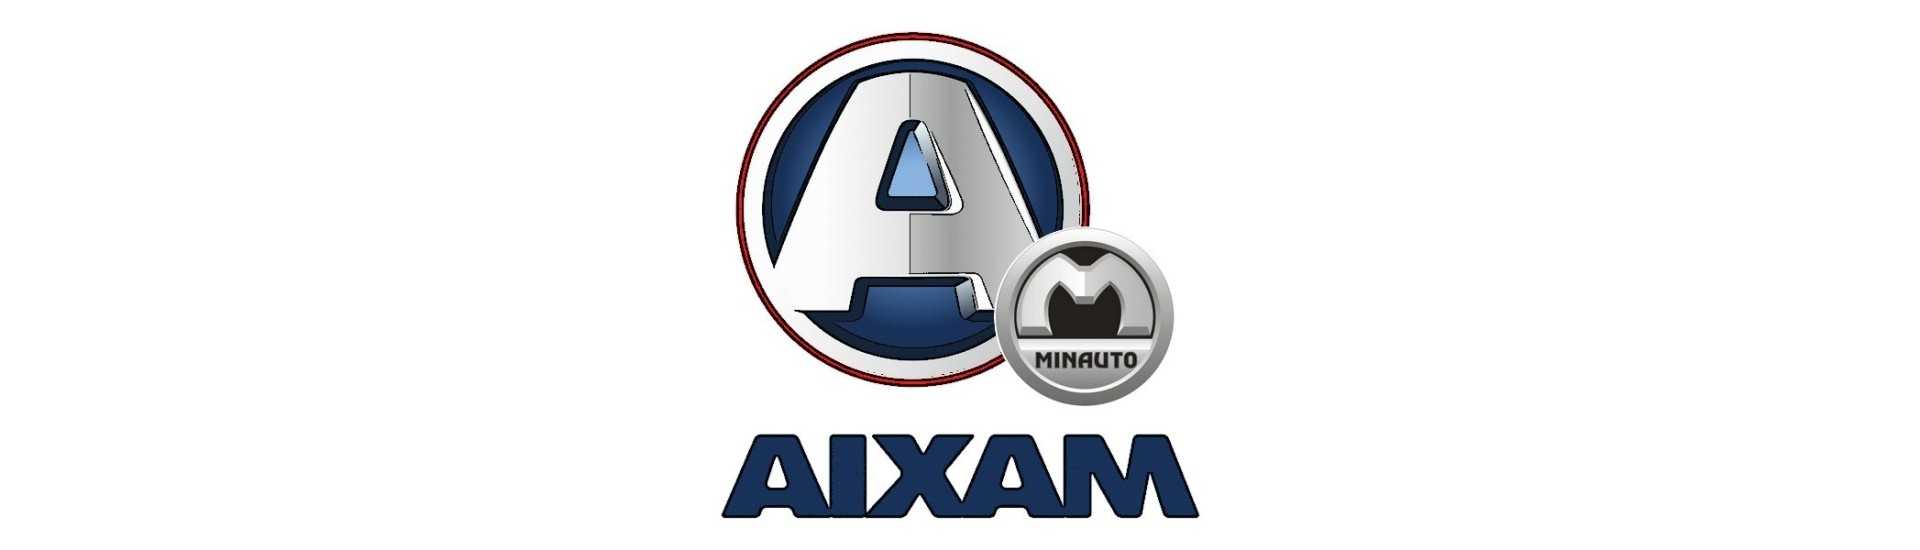 Full moyeu set best car prices without permit Aixam Minauto